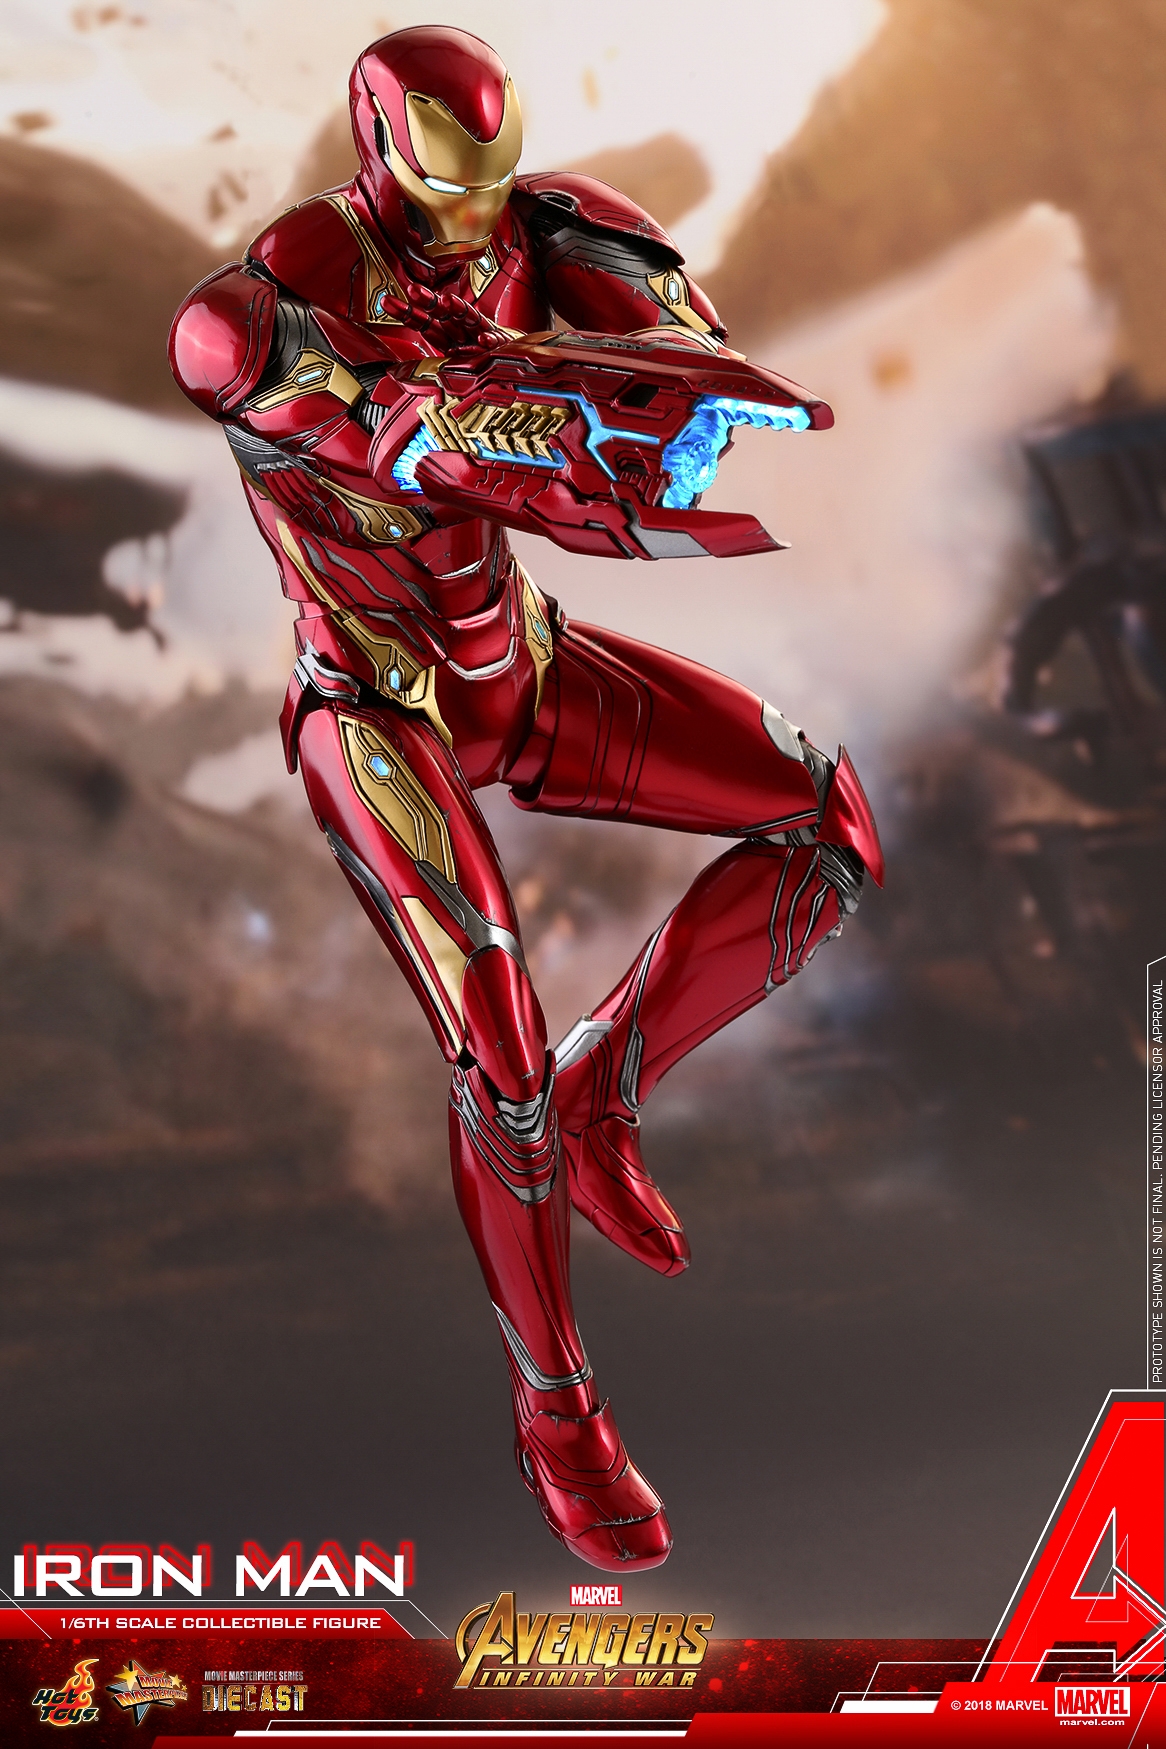 Hot-Toys-MMS473D23-Avengers-Infinity-War-Iron-Man-Collectible-Figure-010.jpg